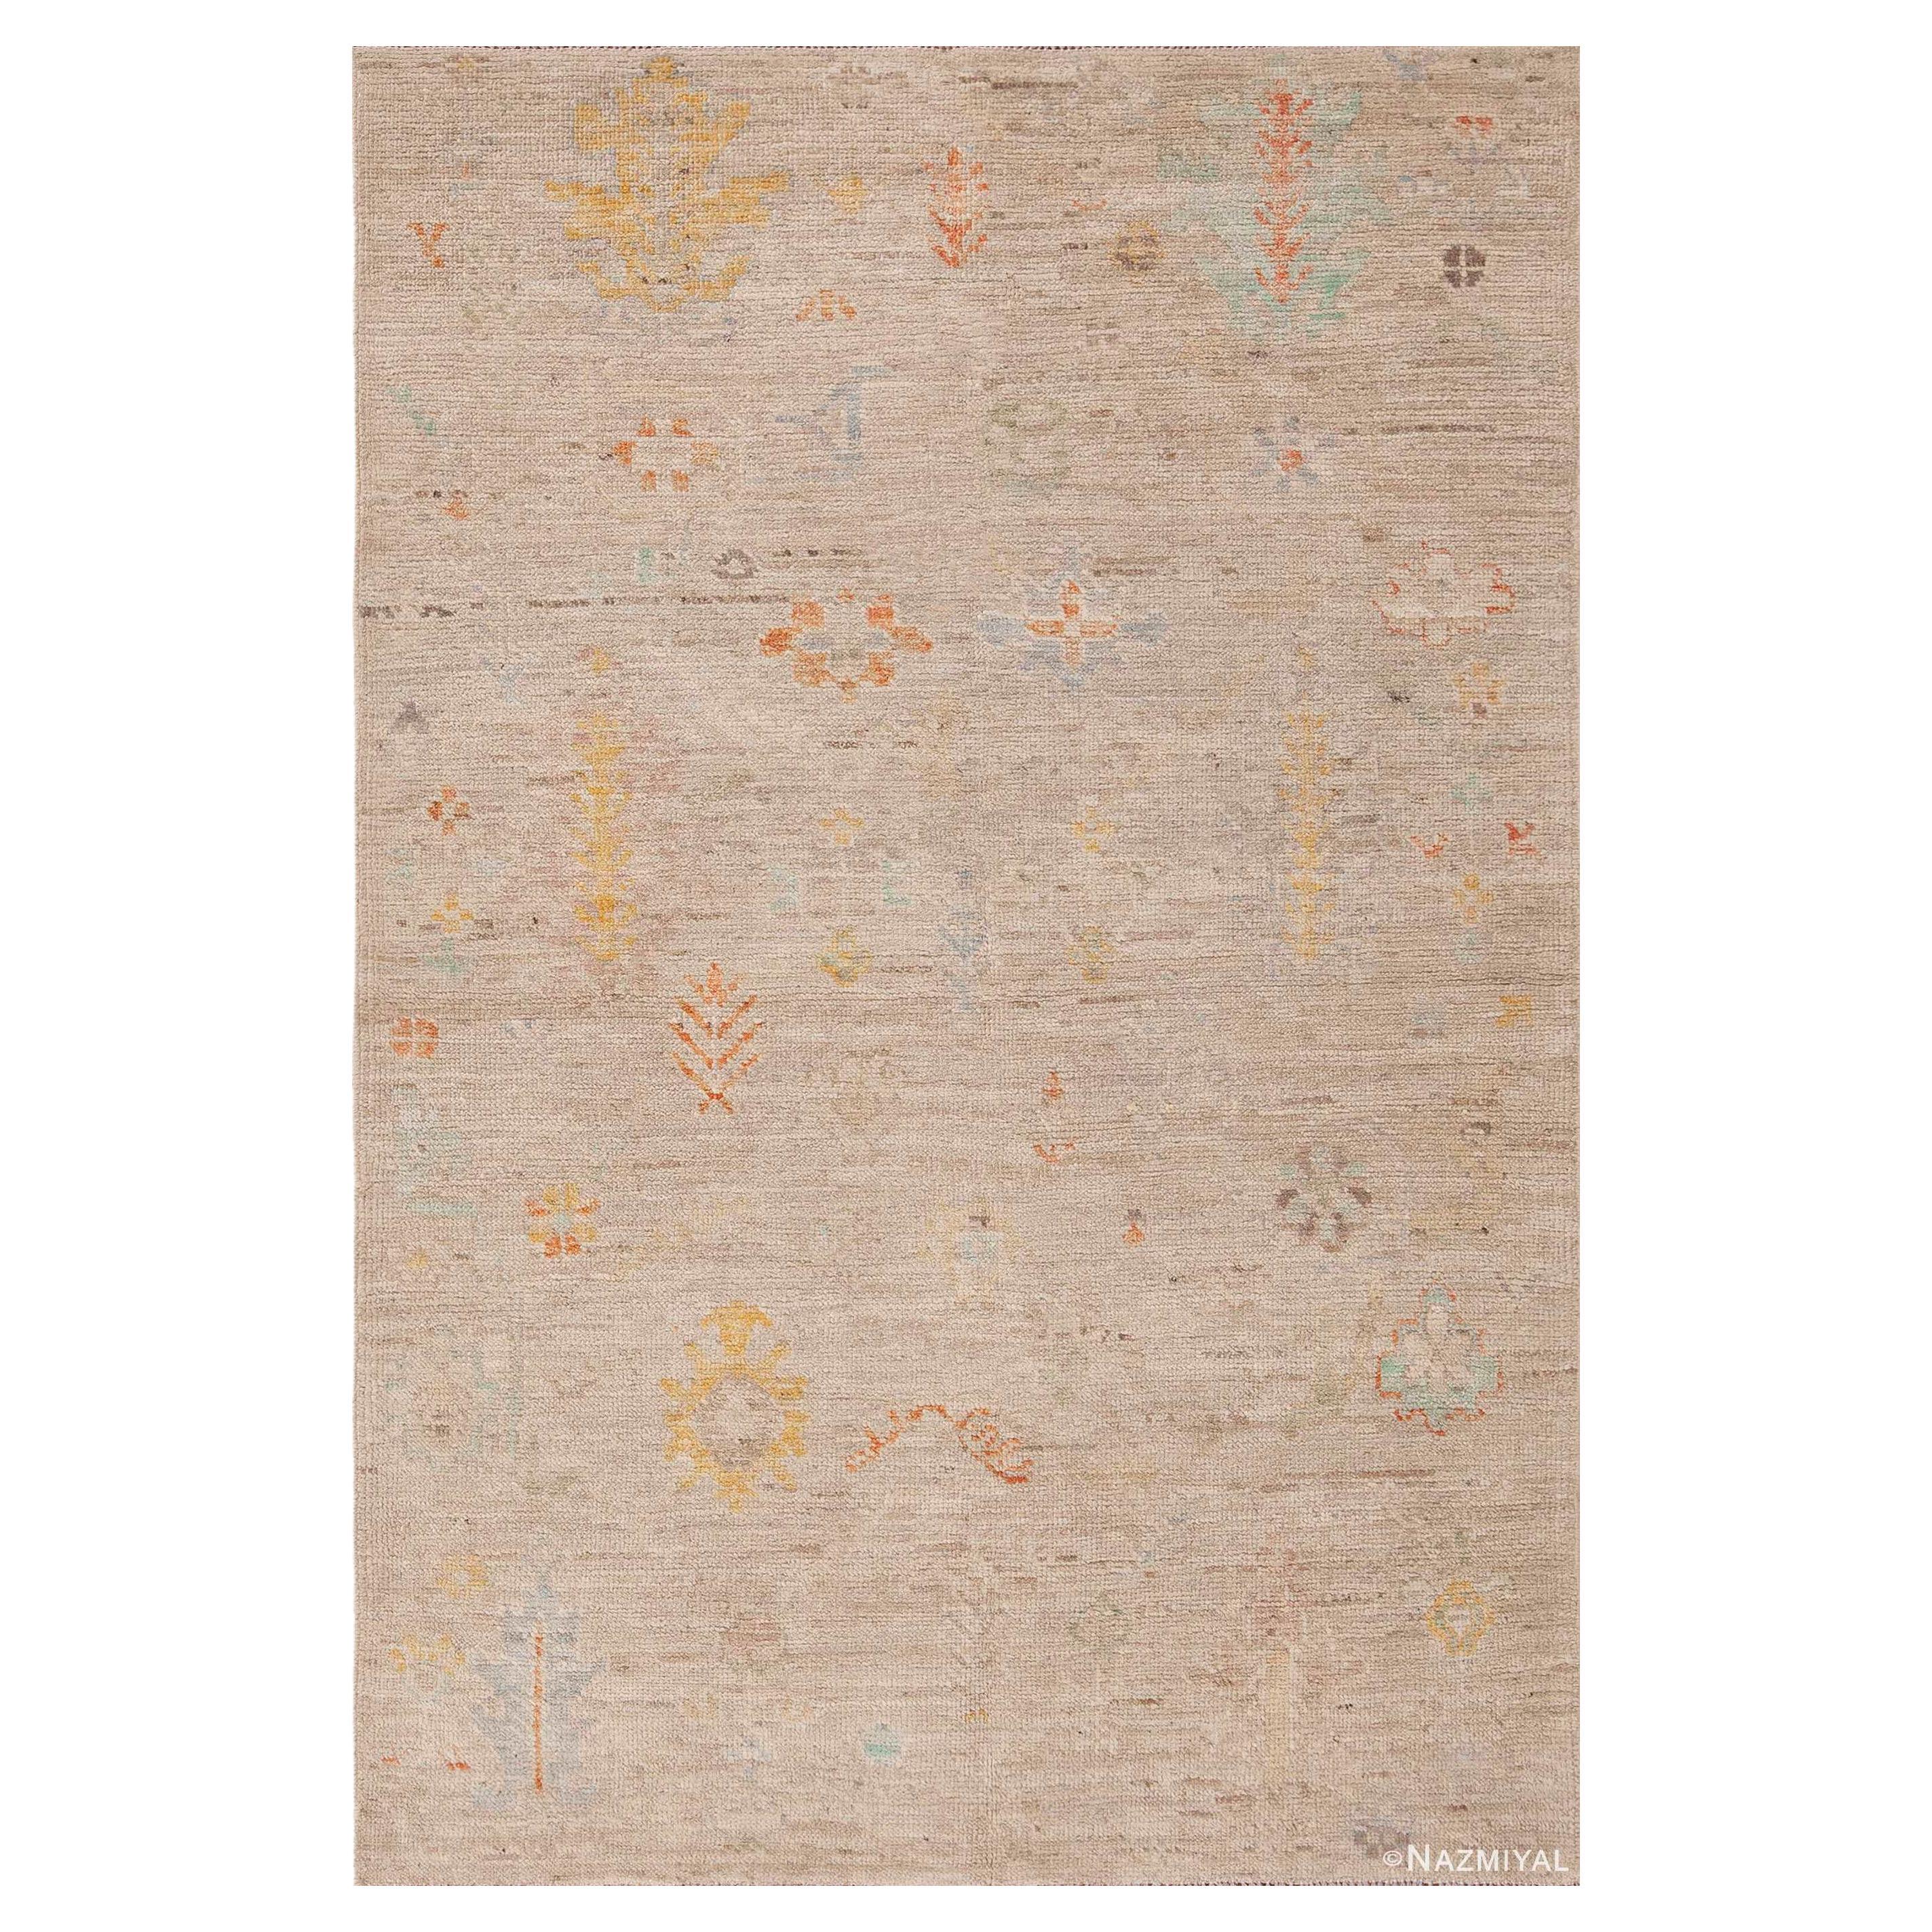 Nazmiyal Kollektion Moderner handgefertigter Teppich in abstraktem Stammesdesign 4' x 5'11"